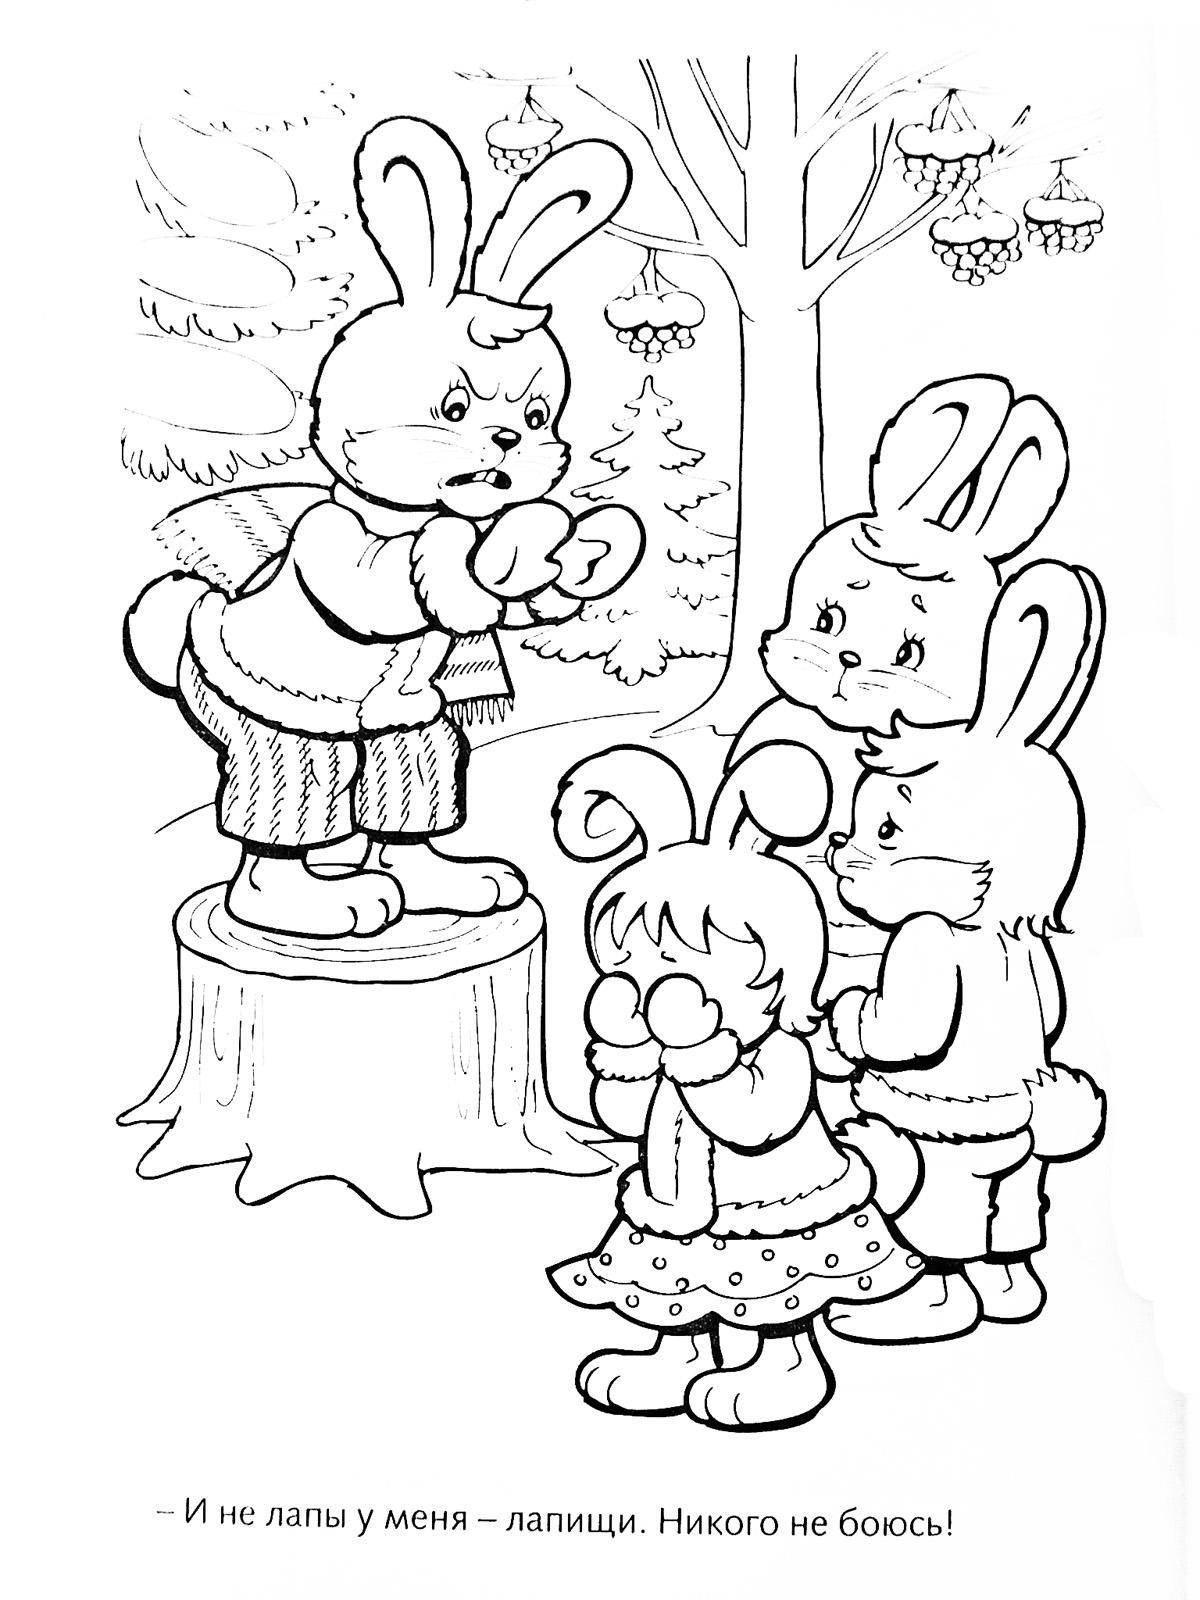 Название: Раскраска Рисунок испуганных зайчиков. Категория: домашние животные. Теги: заяц, кролик.